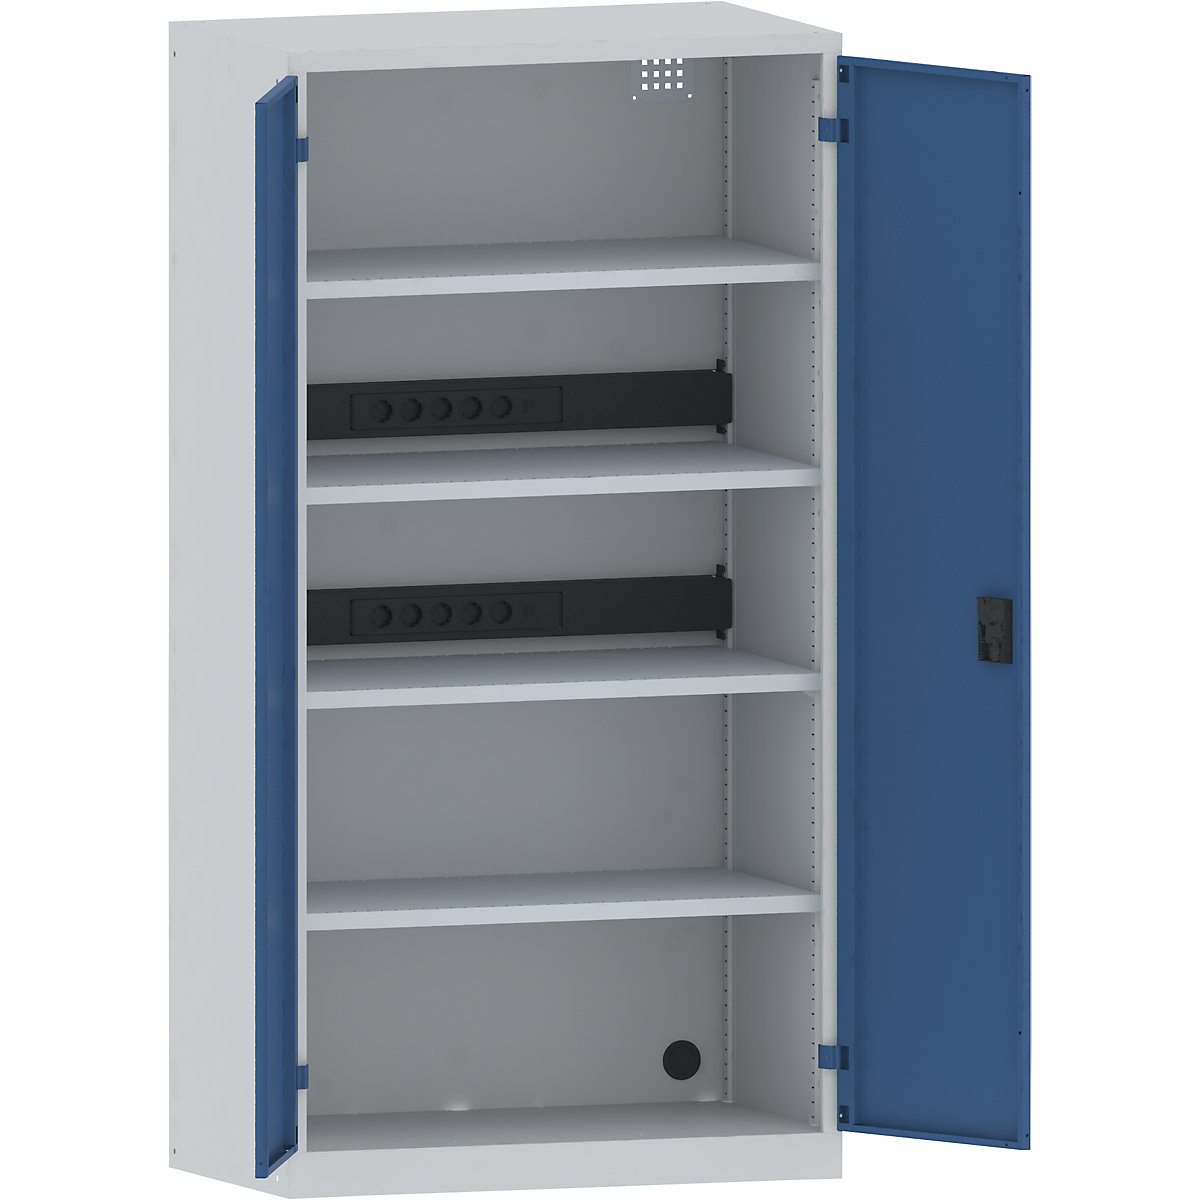 LISTA – Skříň pro nabíjení akumulátorů, 4 police, plné plechové dveře, 2 zásuvkové lišty na zadní straně, šedá / modrá